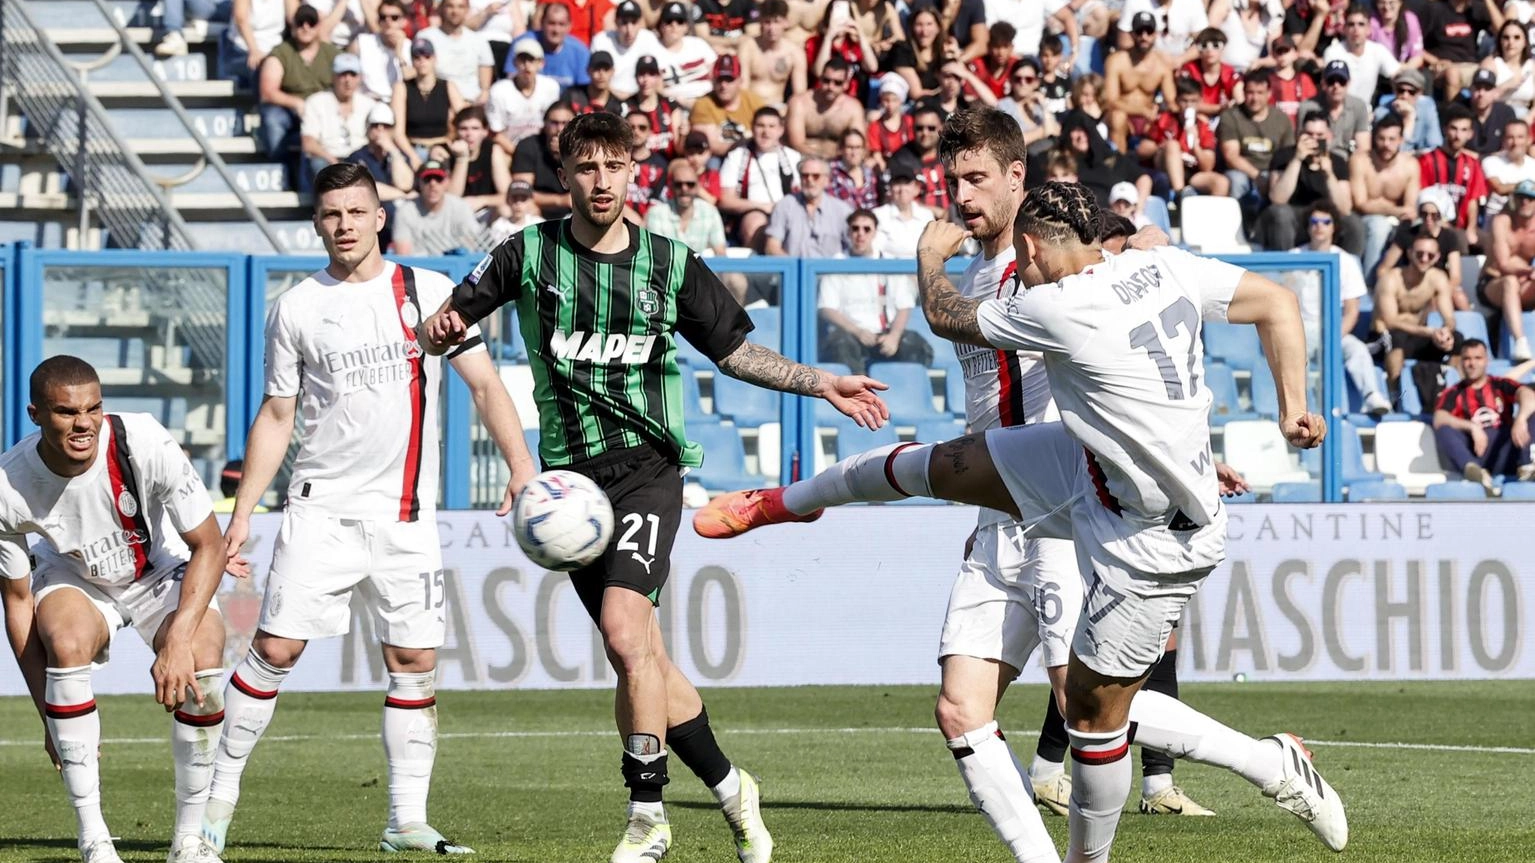 Il Milan acciuffa il pareggio in extremis per 3-3 a Sassuolo